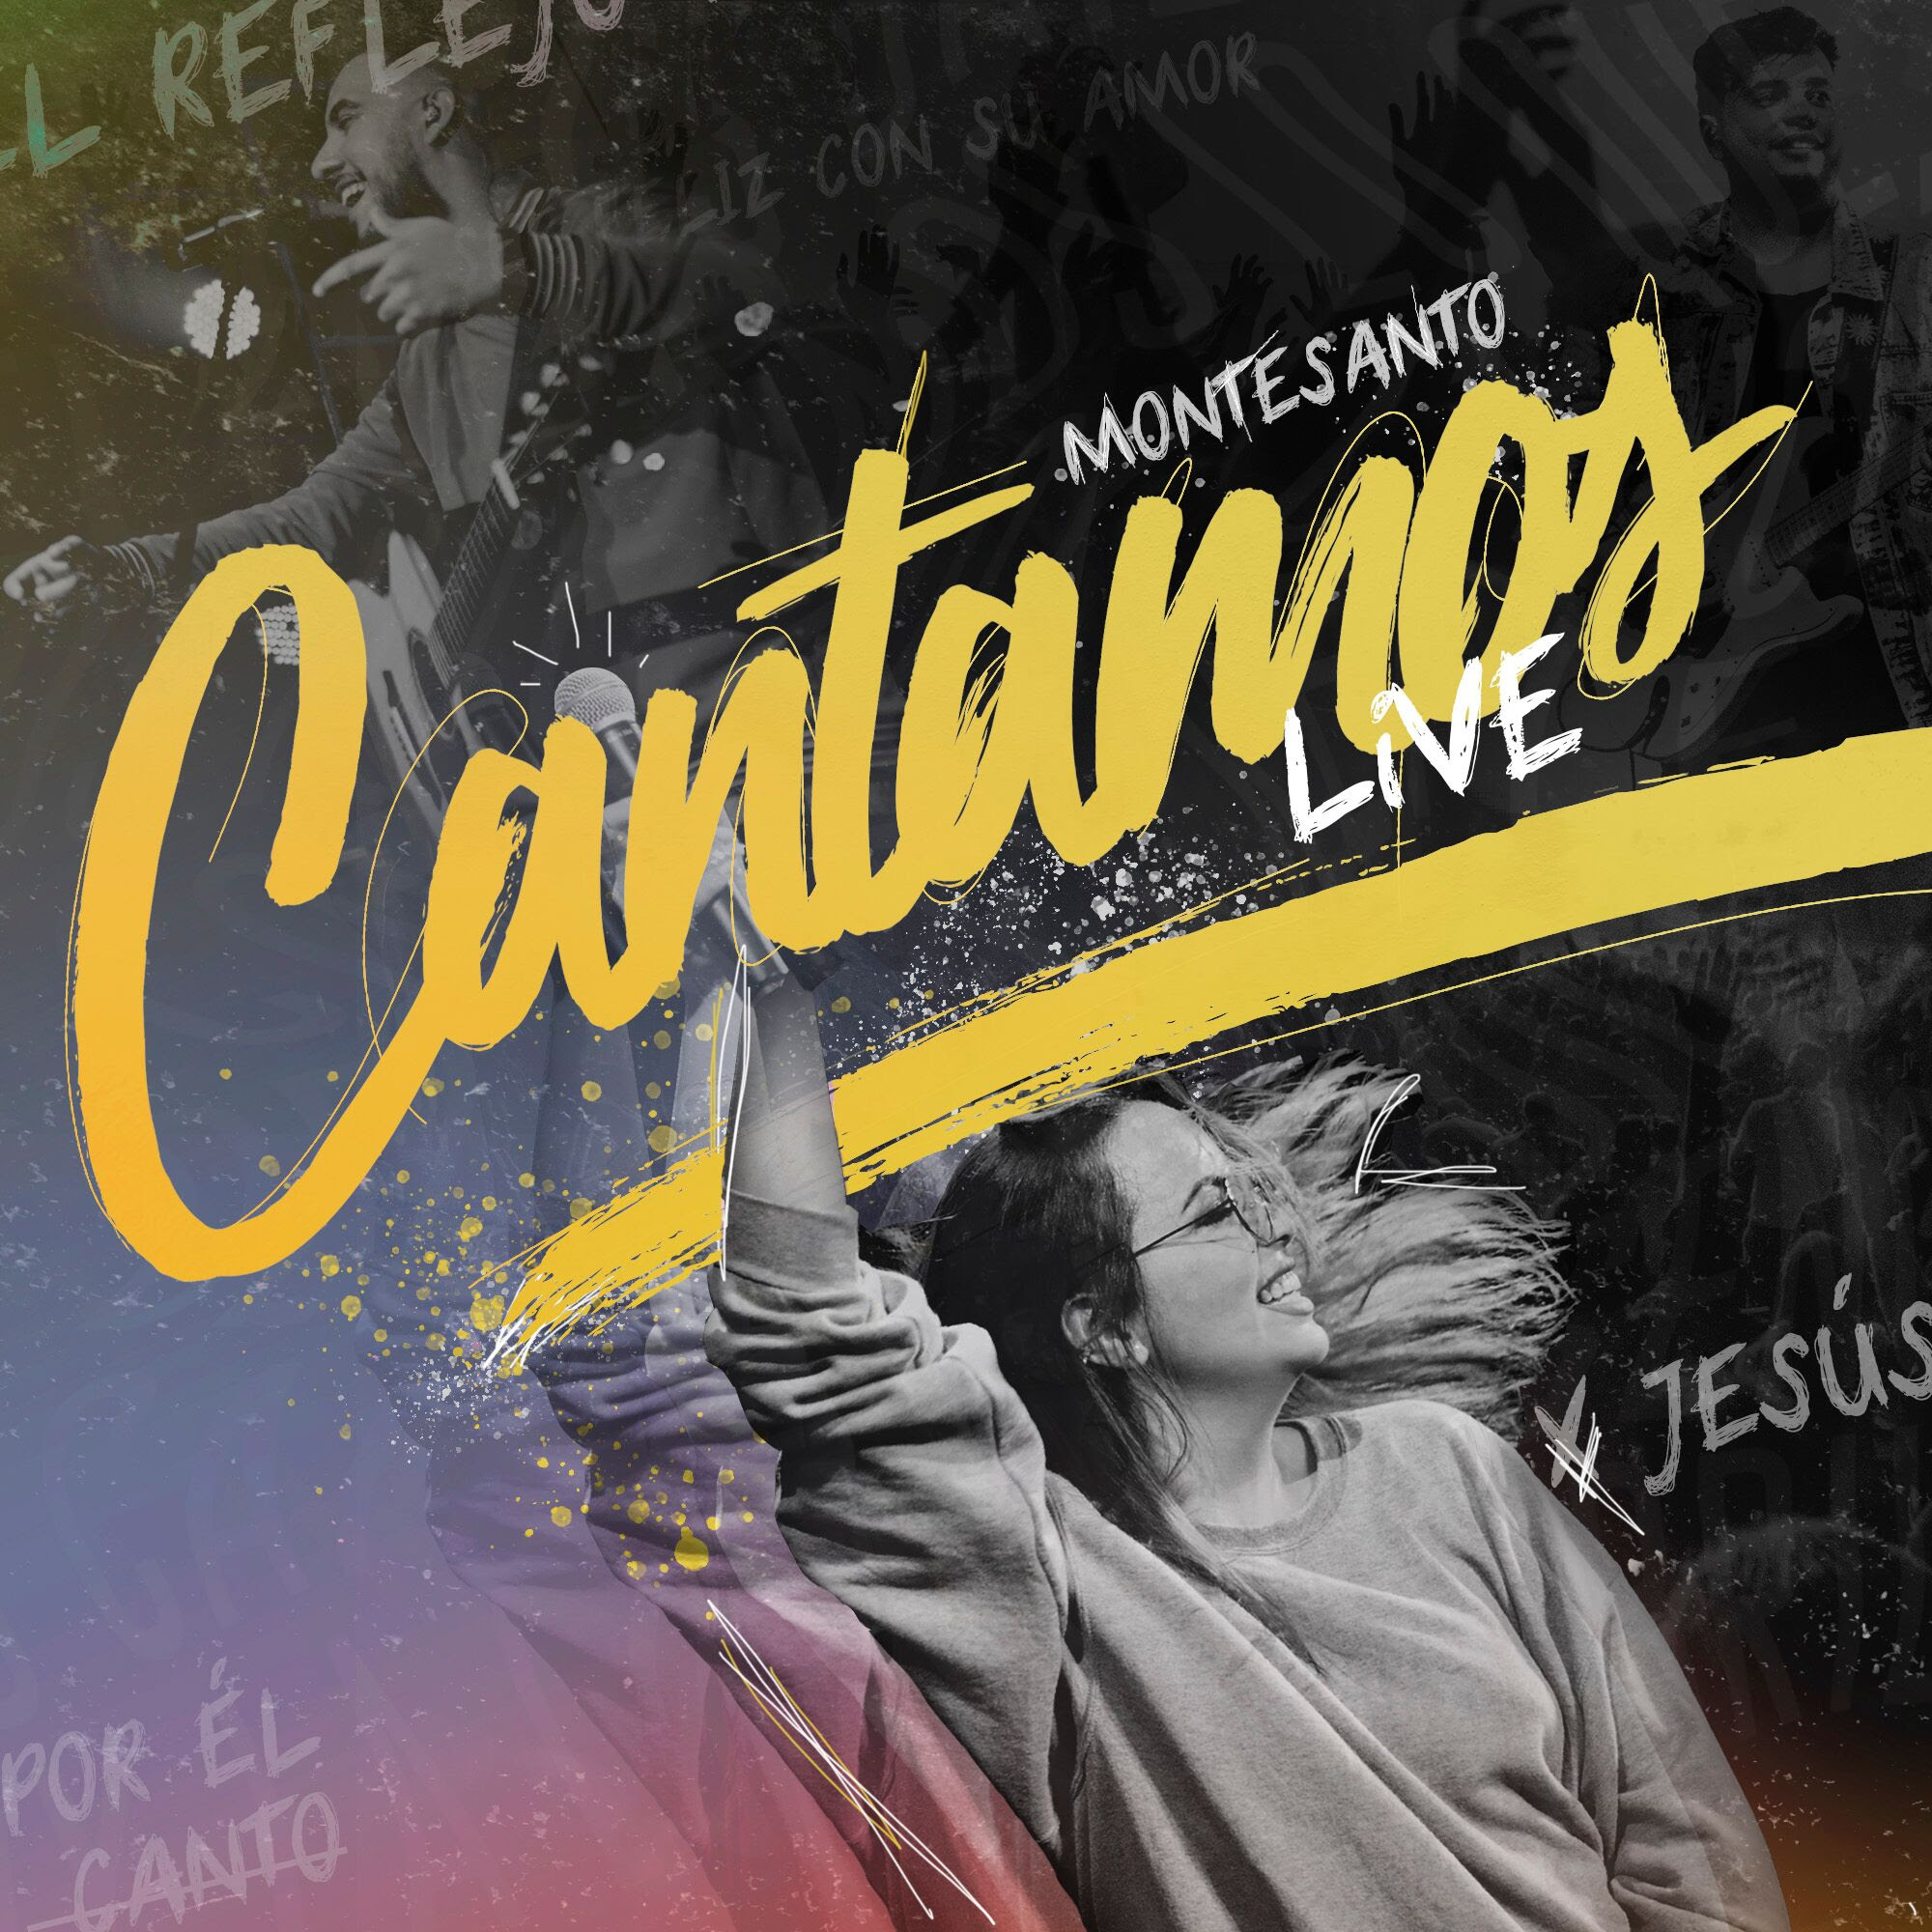 Montesanto estrena el videoclip “Cantamos Live”